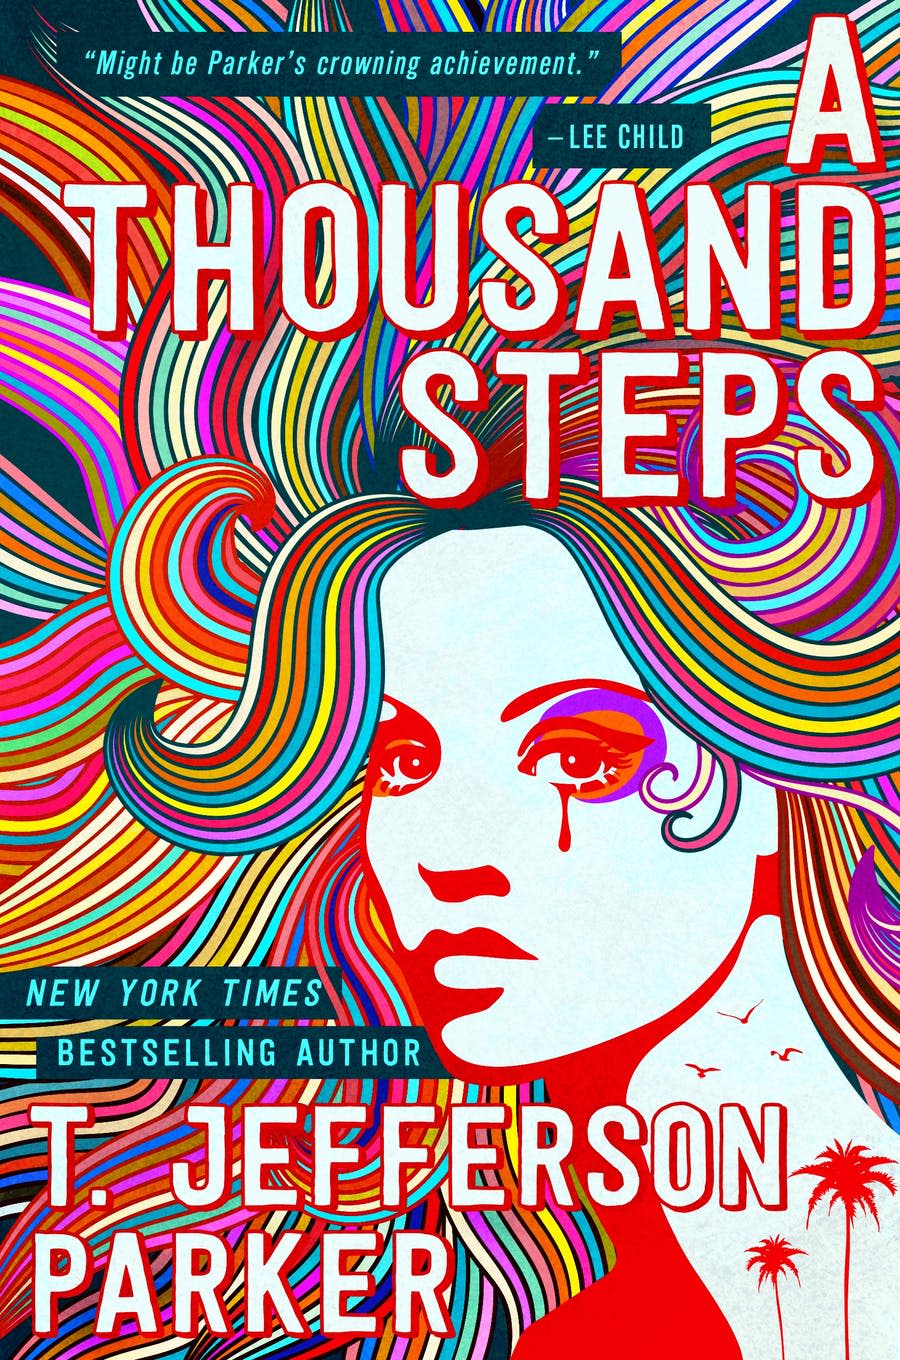 "A Thousand Steps," by T. Jefferson Parker.